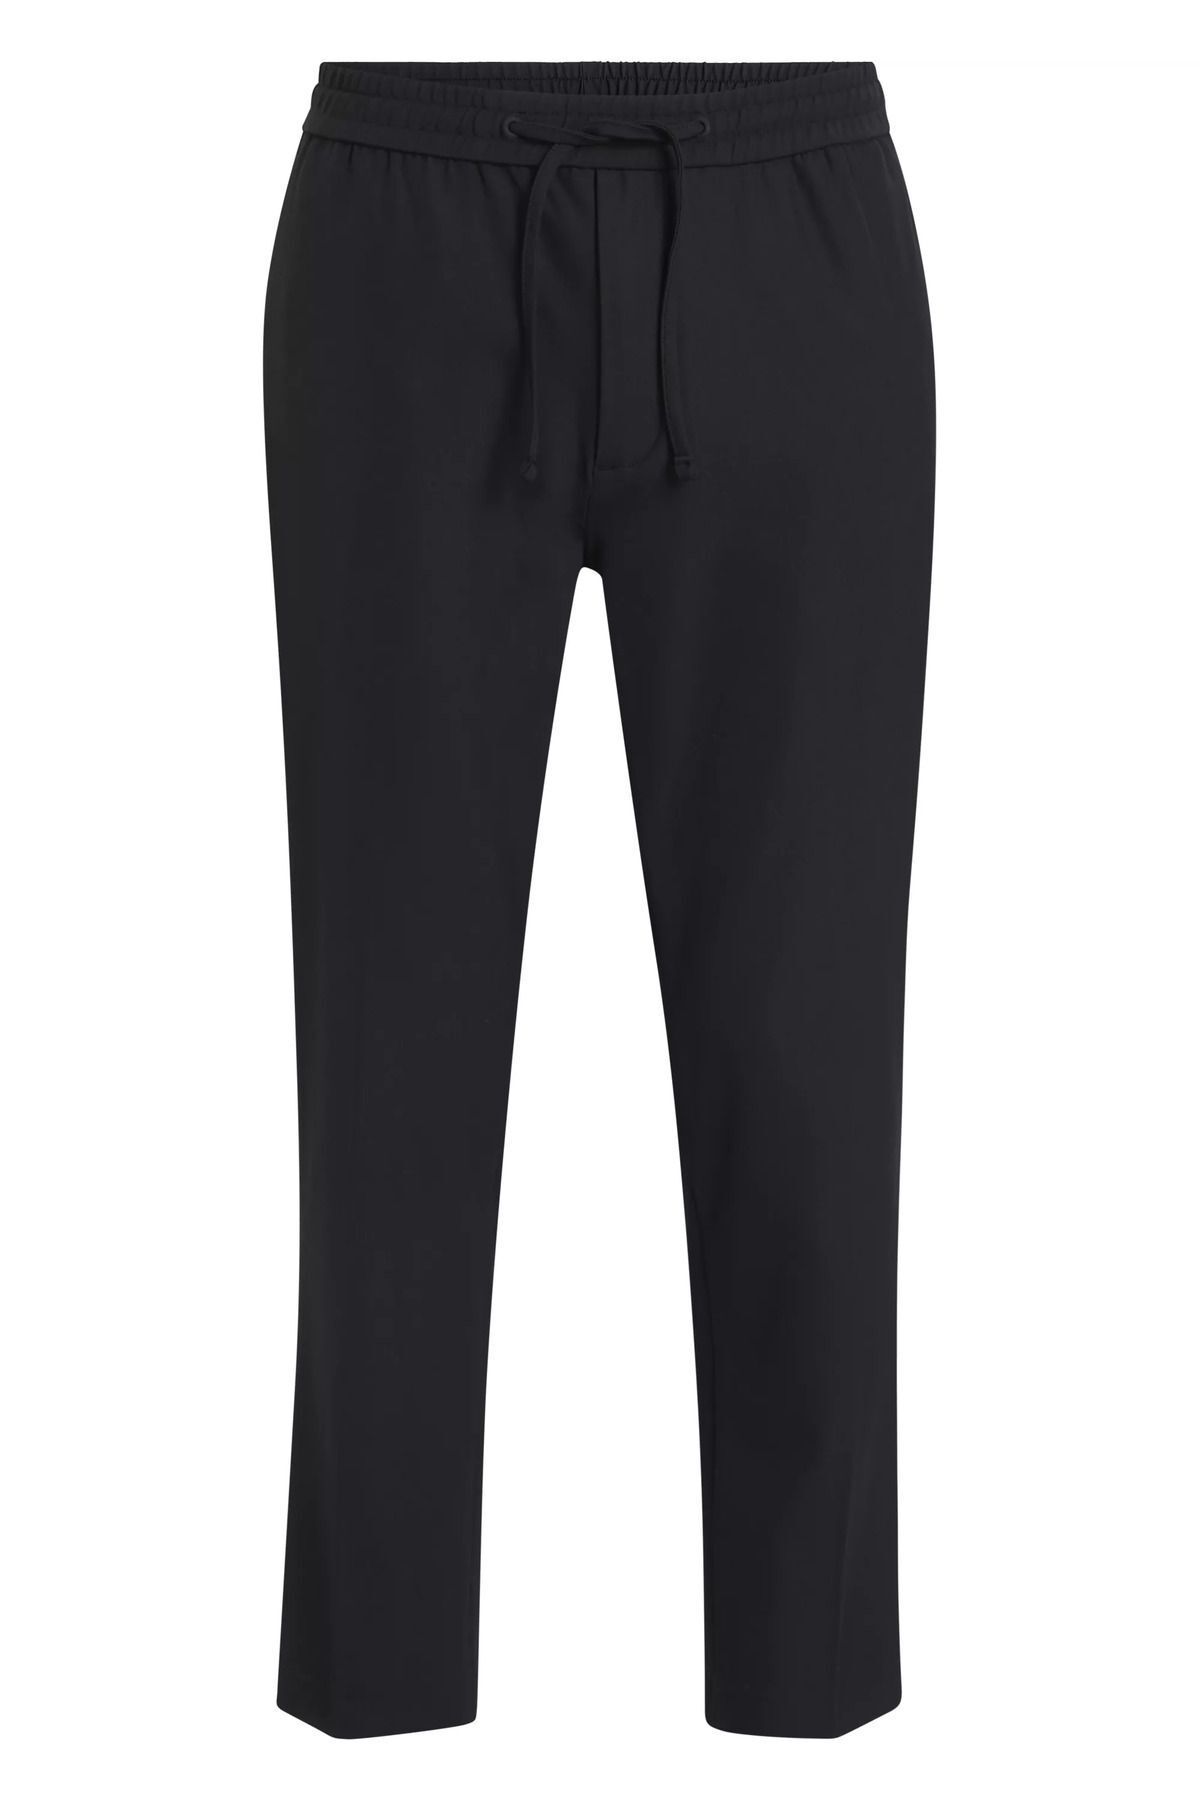 Calvin Klein Erkek Pamuklu Normal Bel 5 Cepli Düğmeli Siyah Pantolon K10K112655-BEH